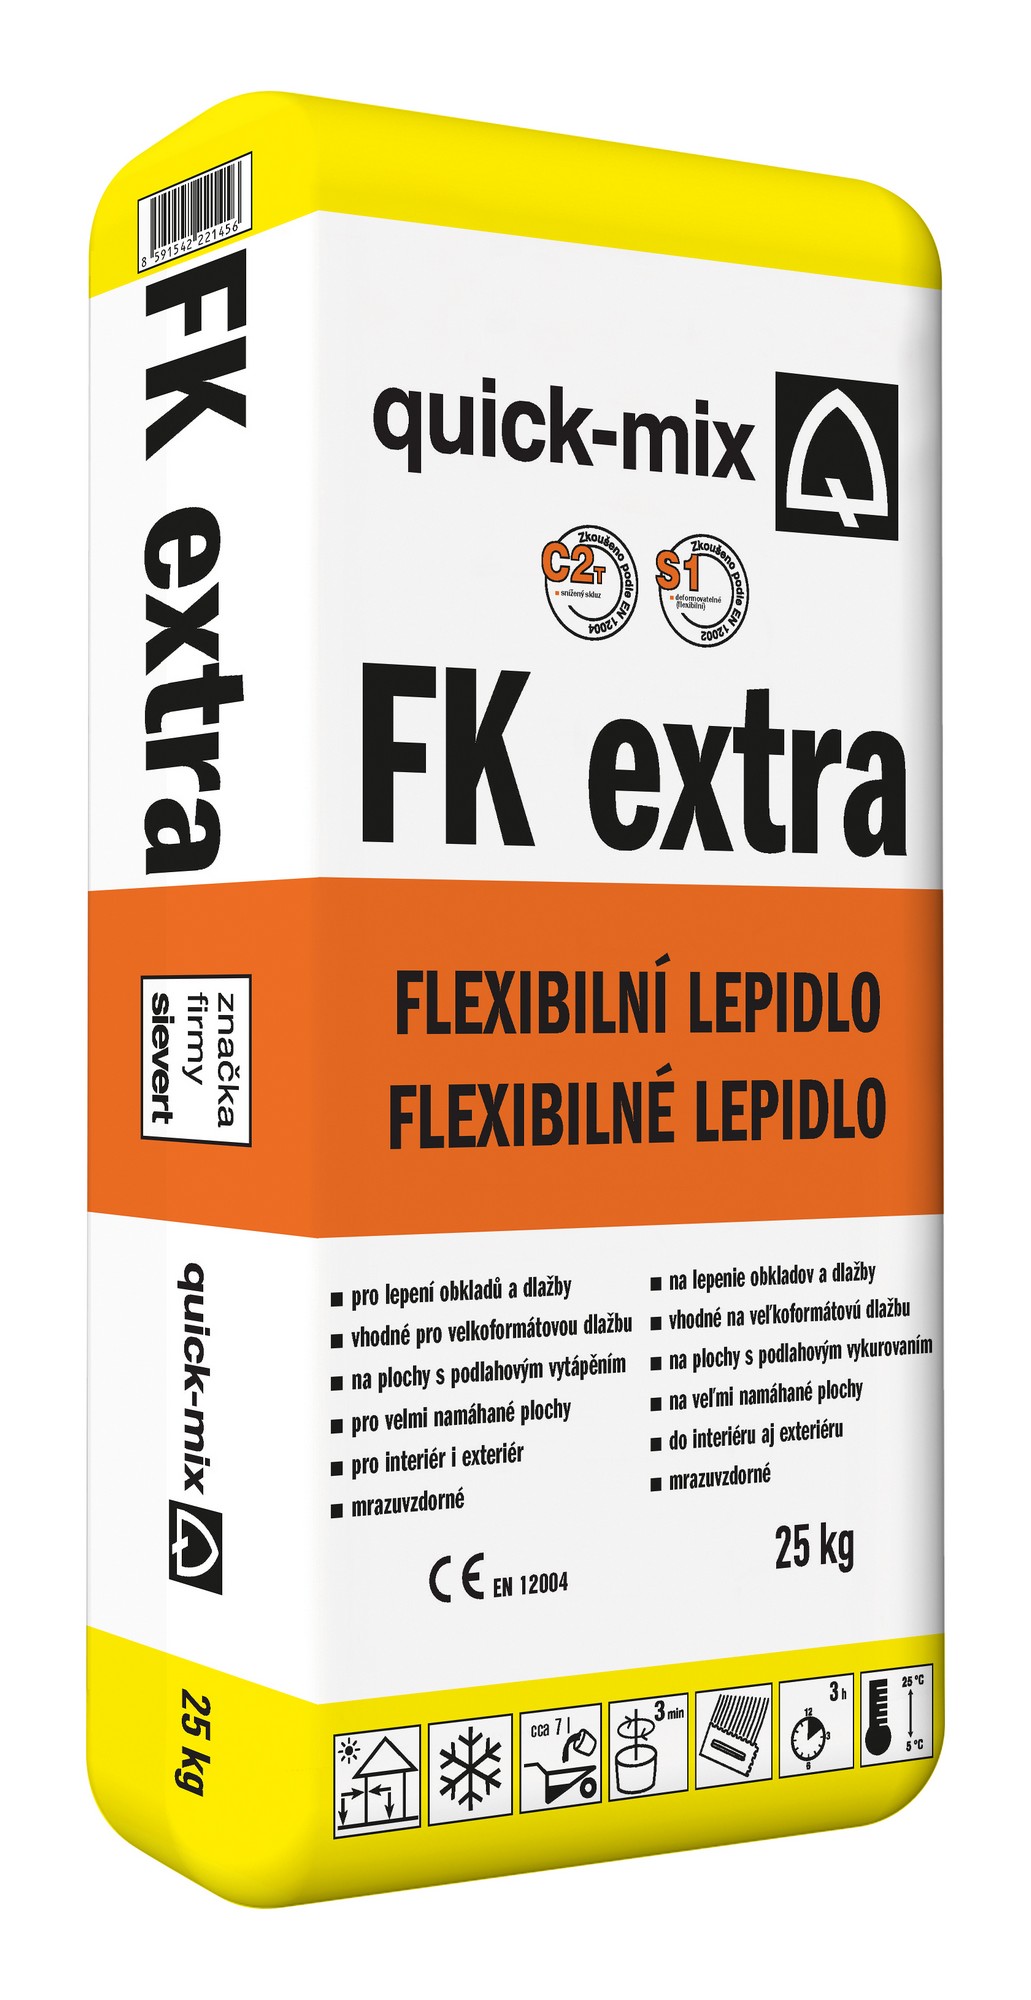 Lepidlo cementové C2T S1 Sakret/Quick-mix FK extra 25 kg